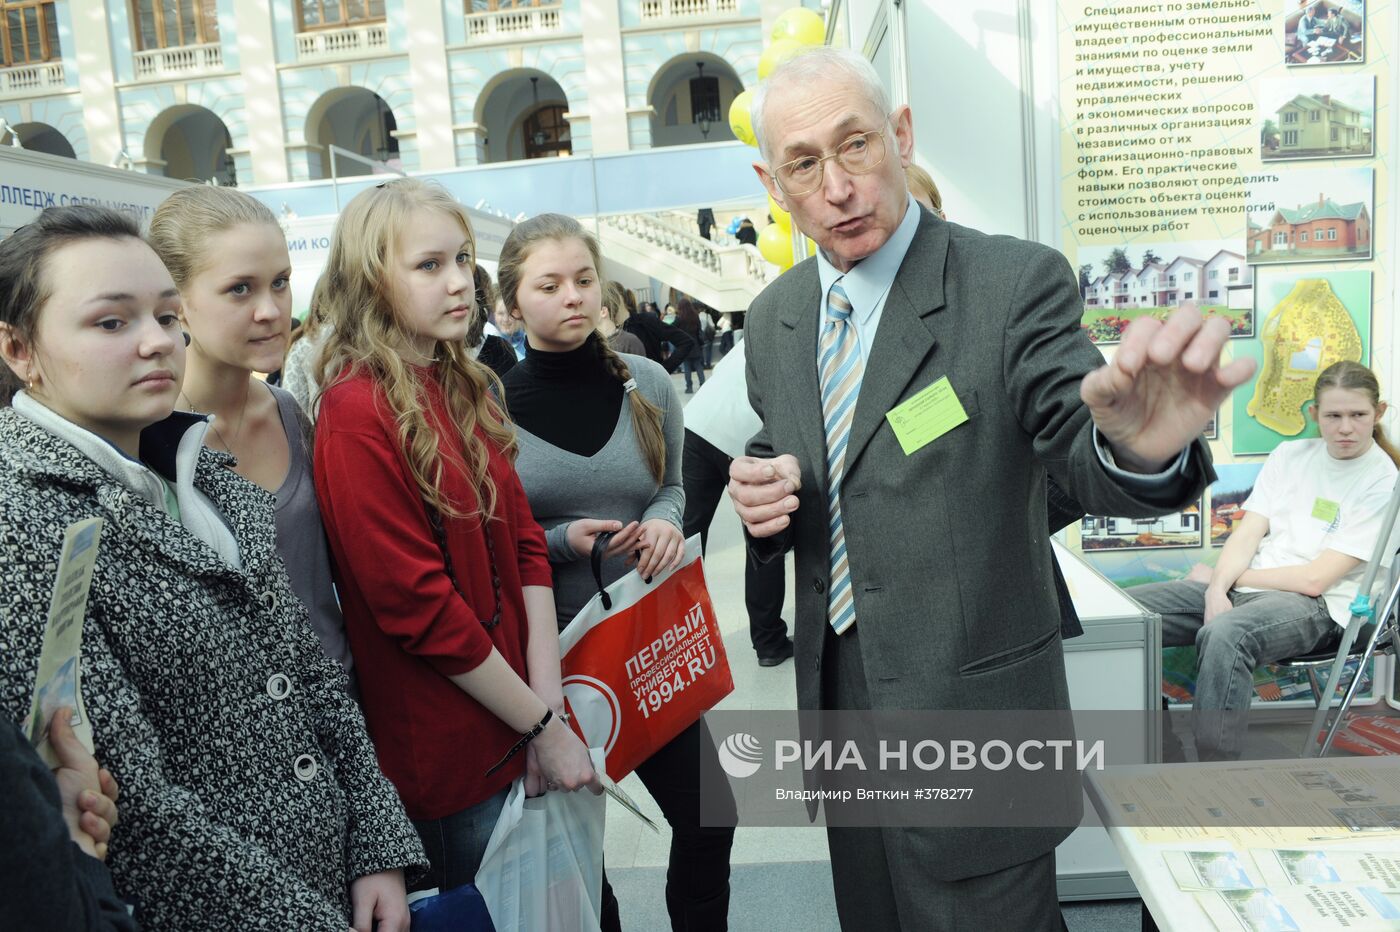 Выставка "Образование и карьера — ХХI век" в Москве